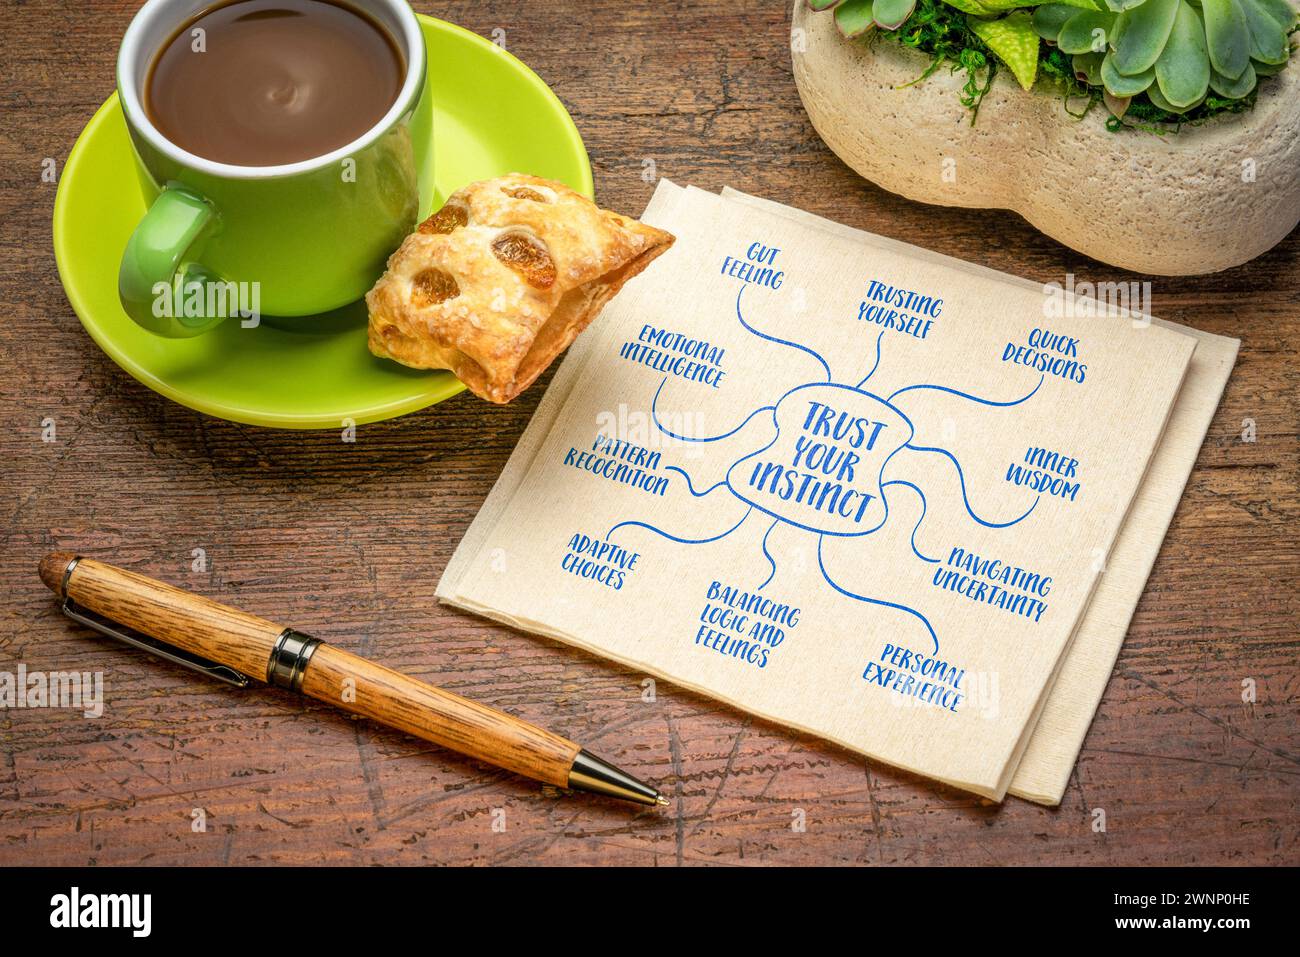 fidatevi del vostro concetto di istinto: infografiche sulla mappa mentale, schizzo su un tovagliolo con caffè, decisione Foto Stock